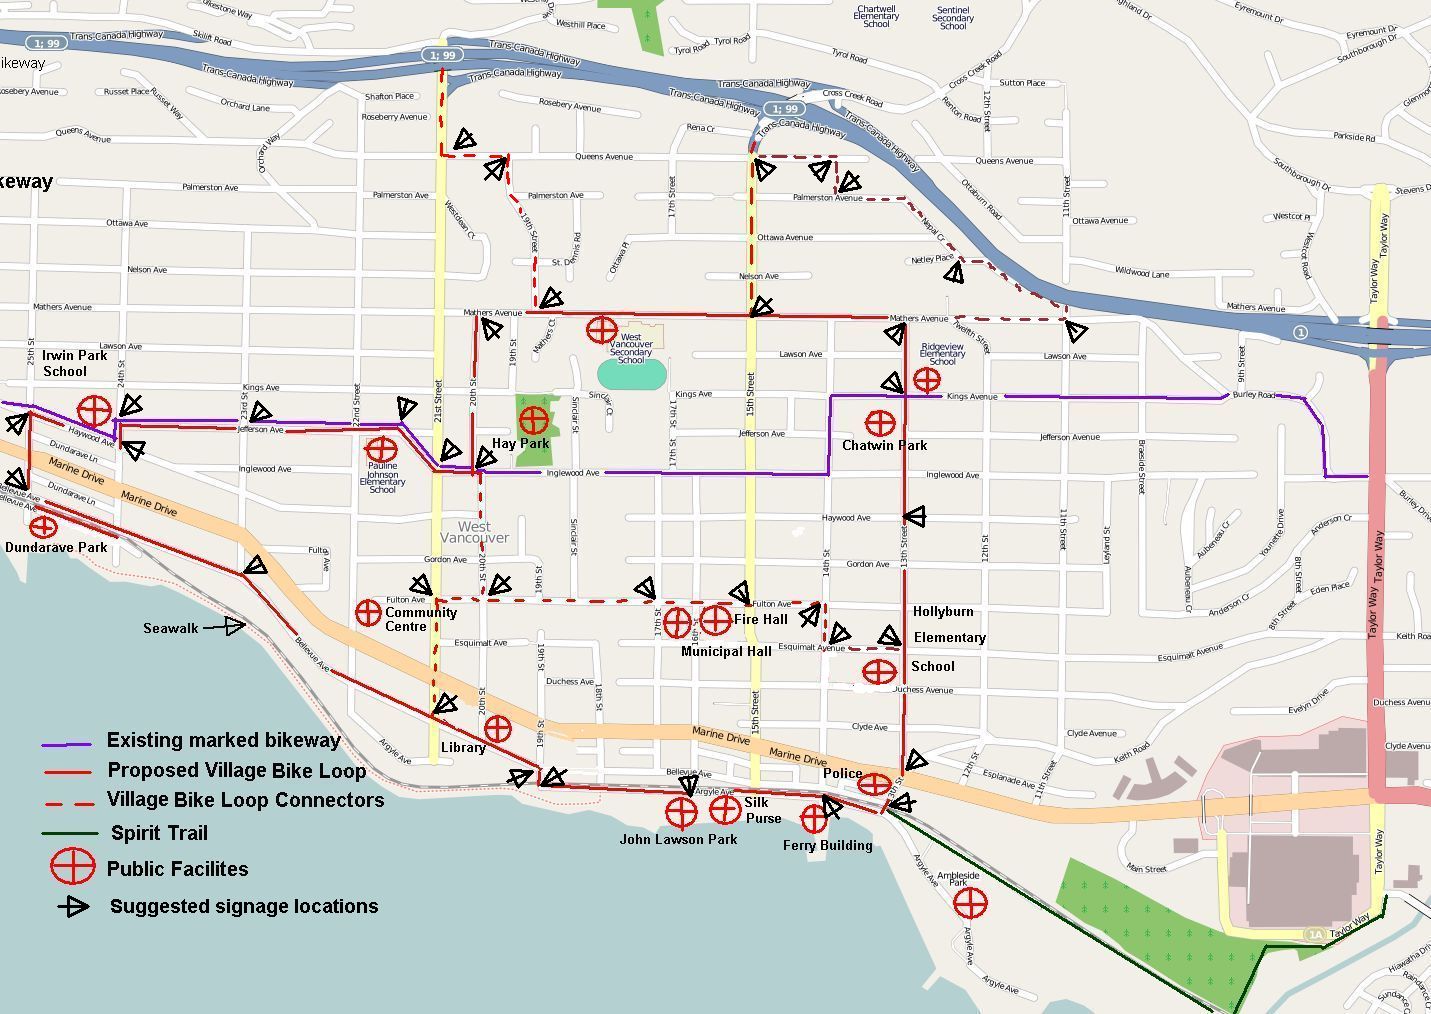 Village Bike Loop with signage locations 08-02-10.jpg